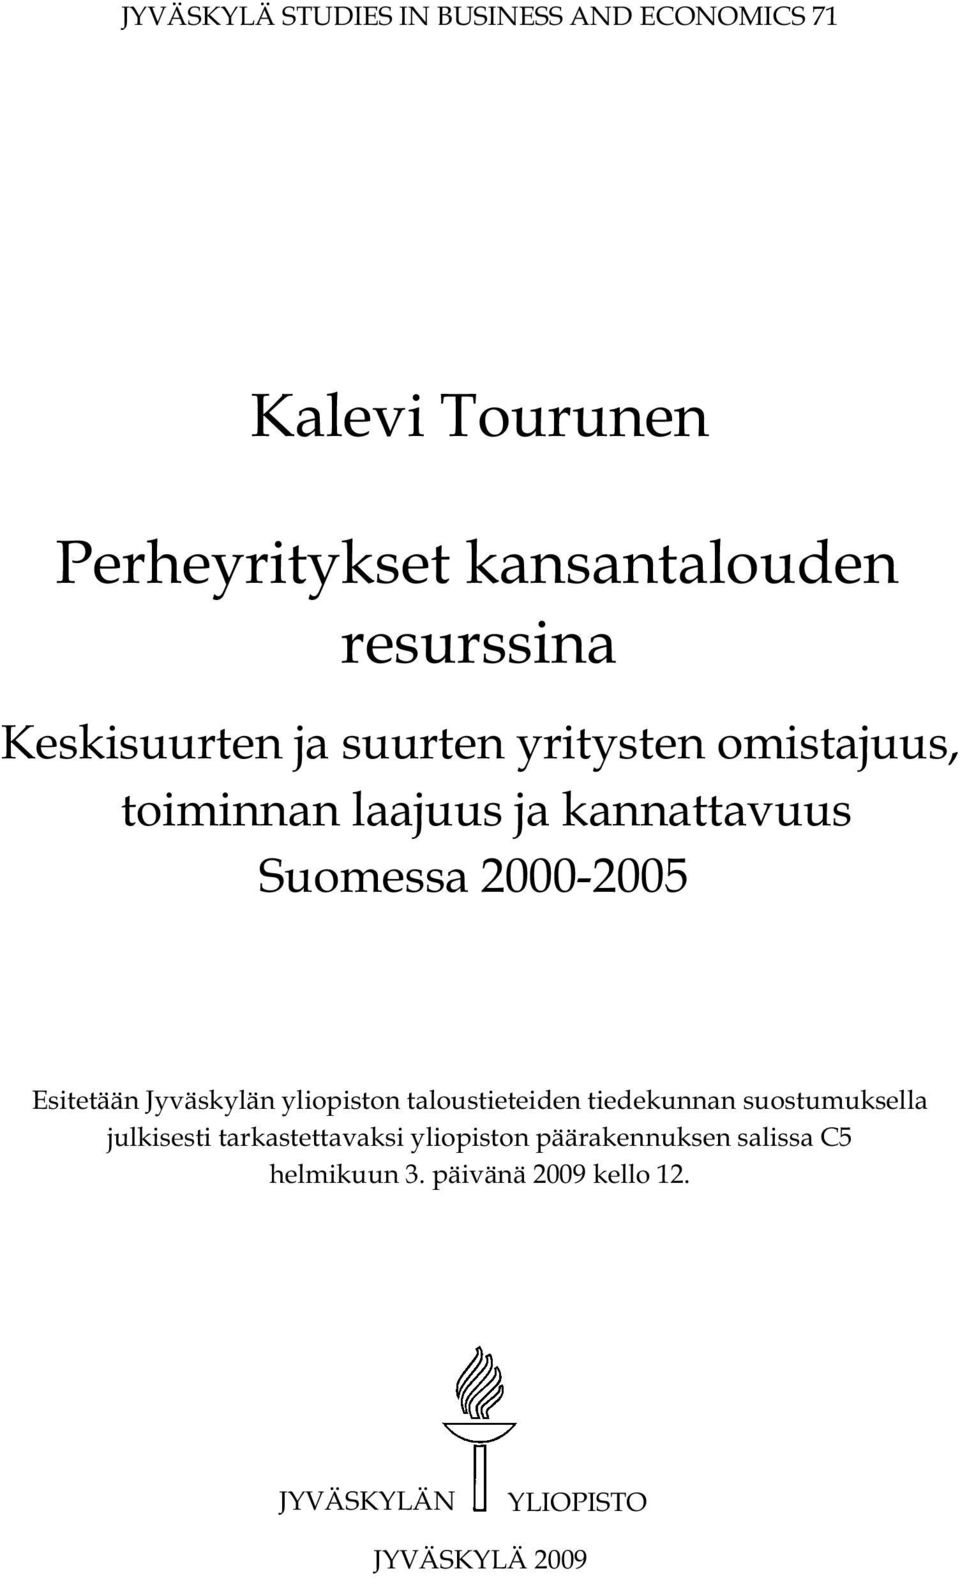 Esitetään Jyväskylän yliopiston taloustieteiden tiedekunnan suostumuksella julkisesti tarkastettavaksi